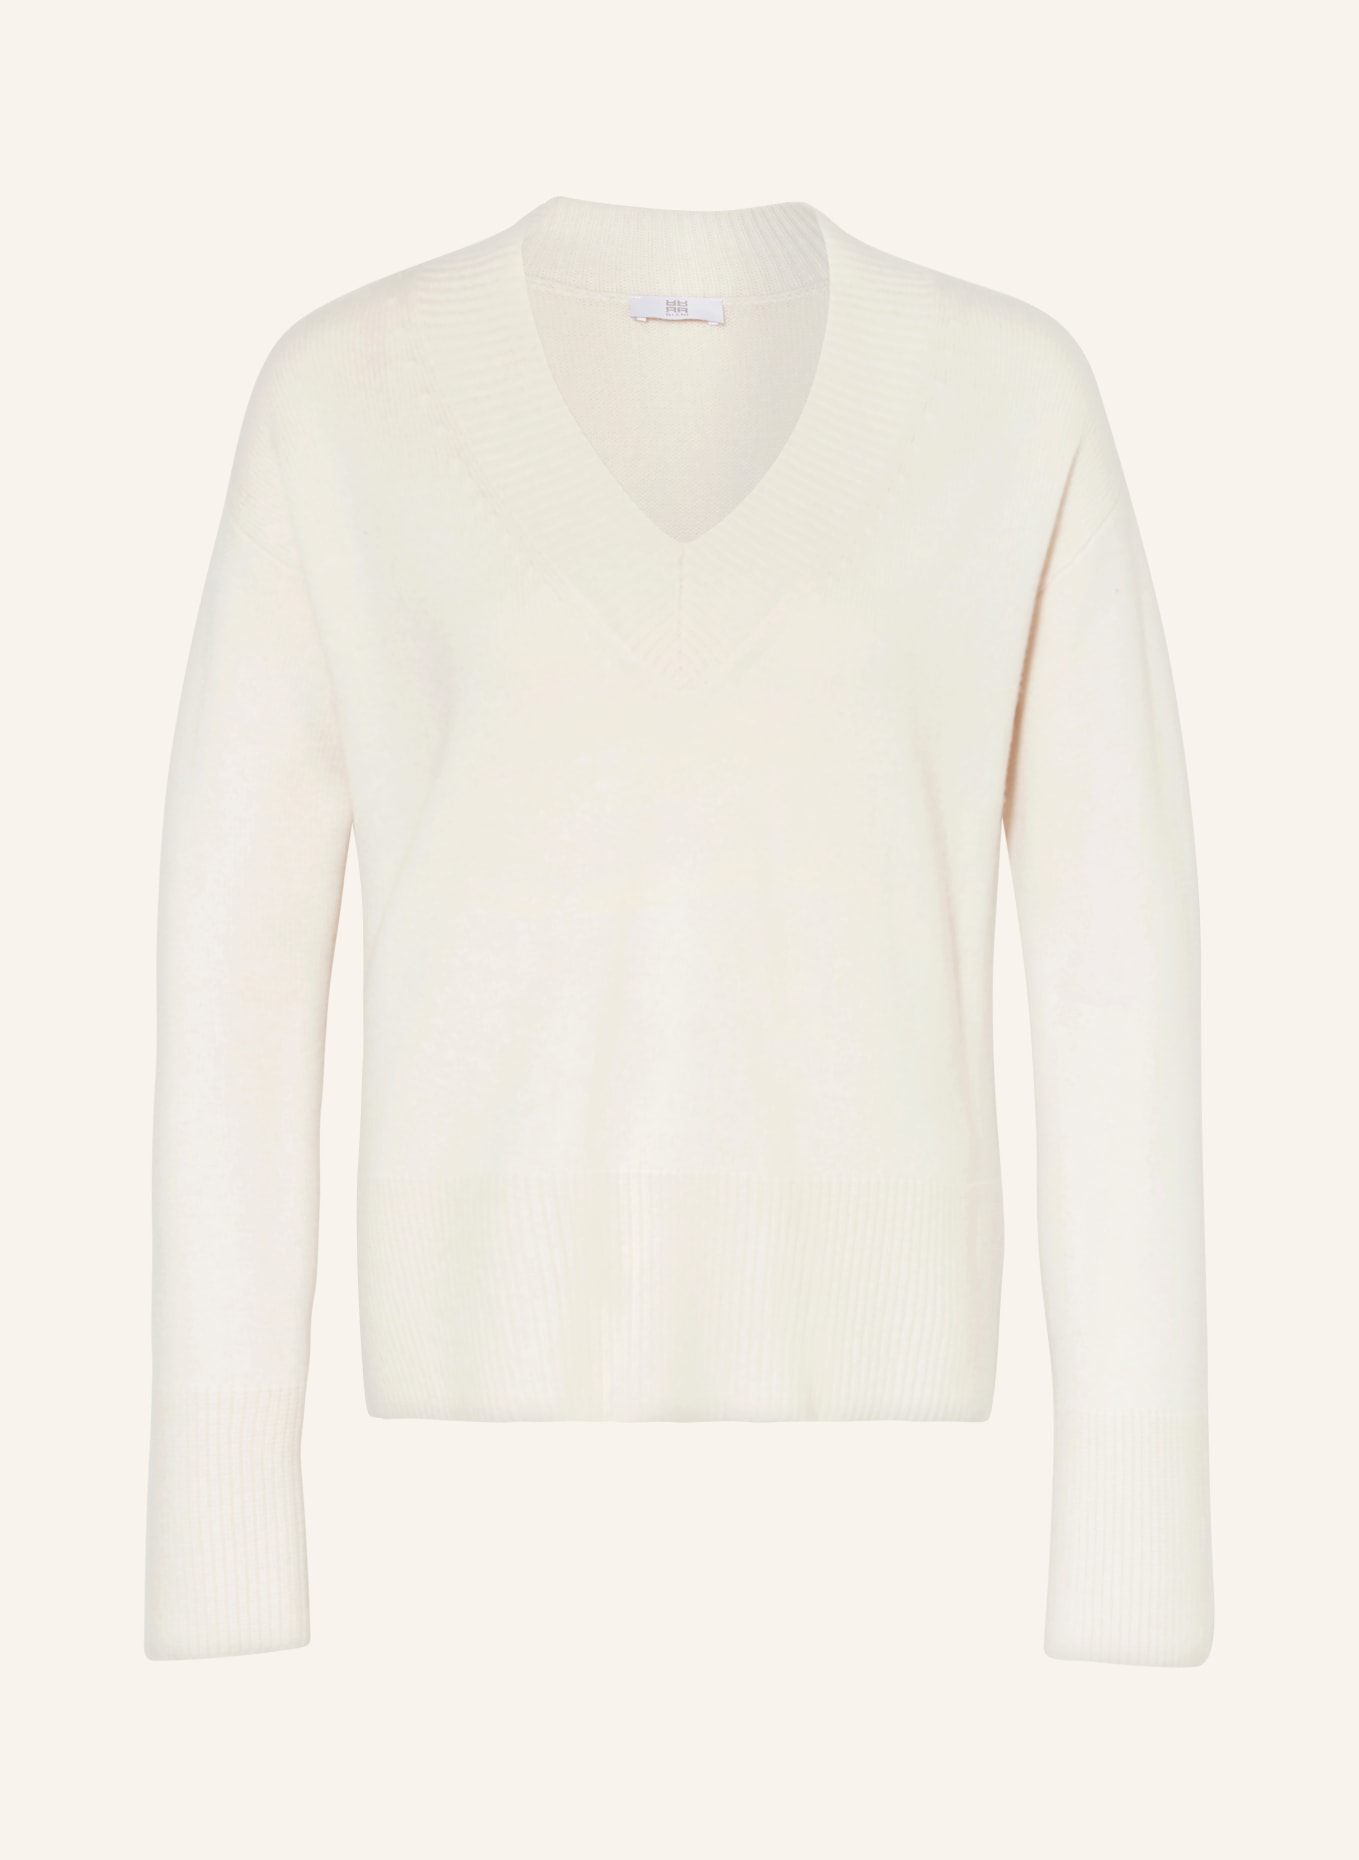 RIANI Pullover mit Cashmere, Farbe: CREME (Bild 1)